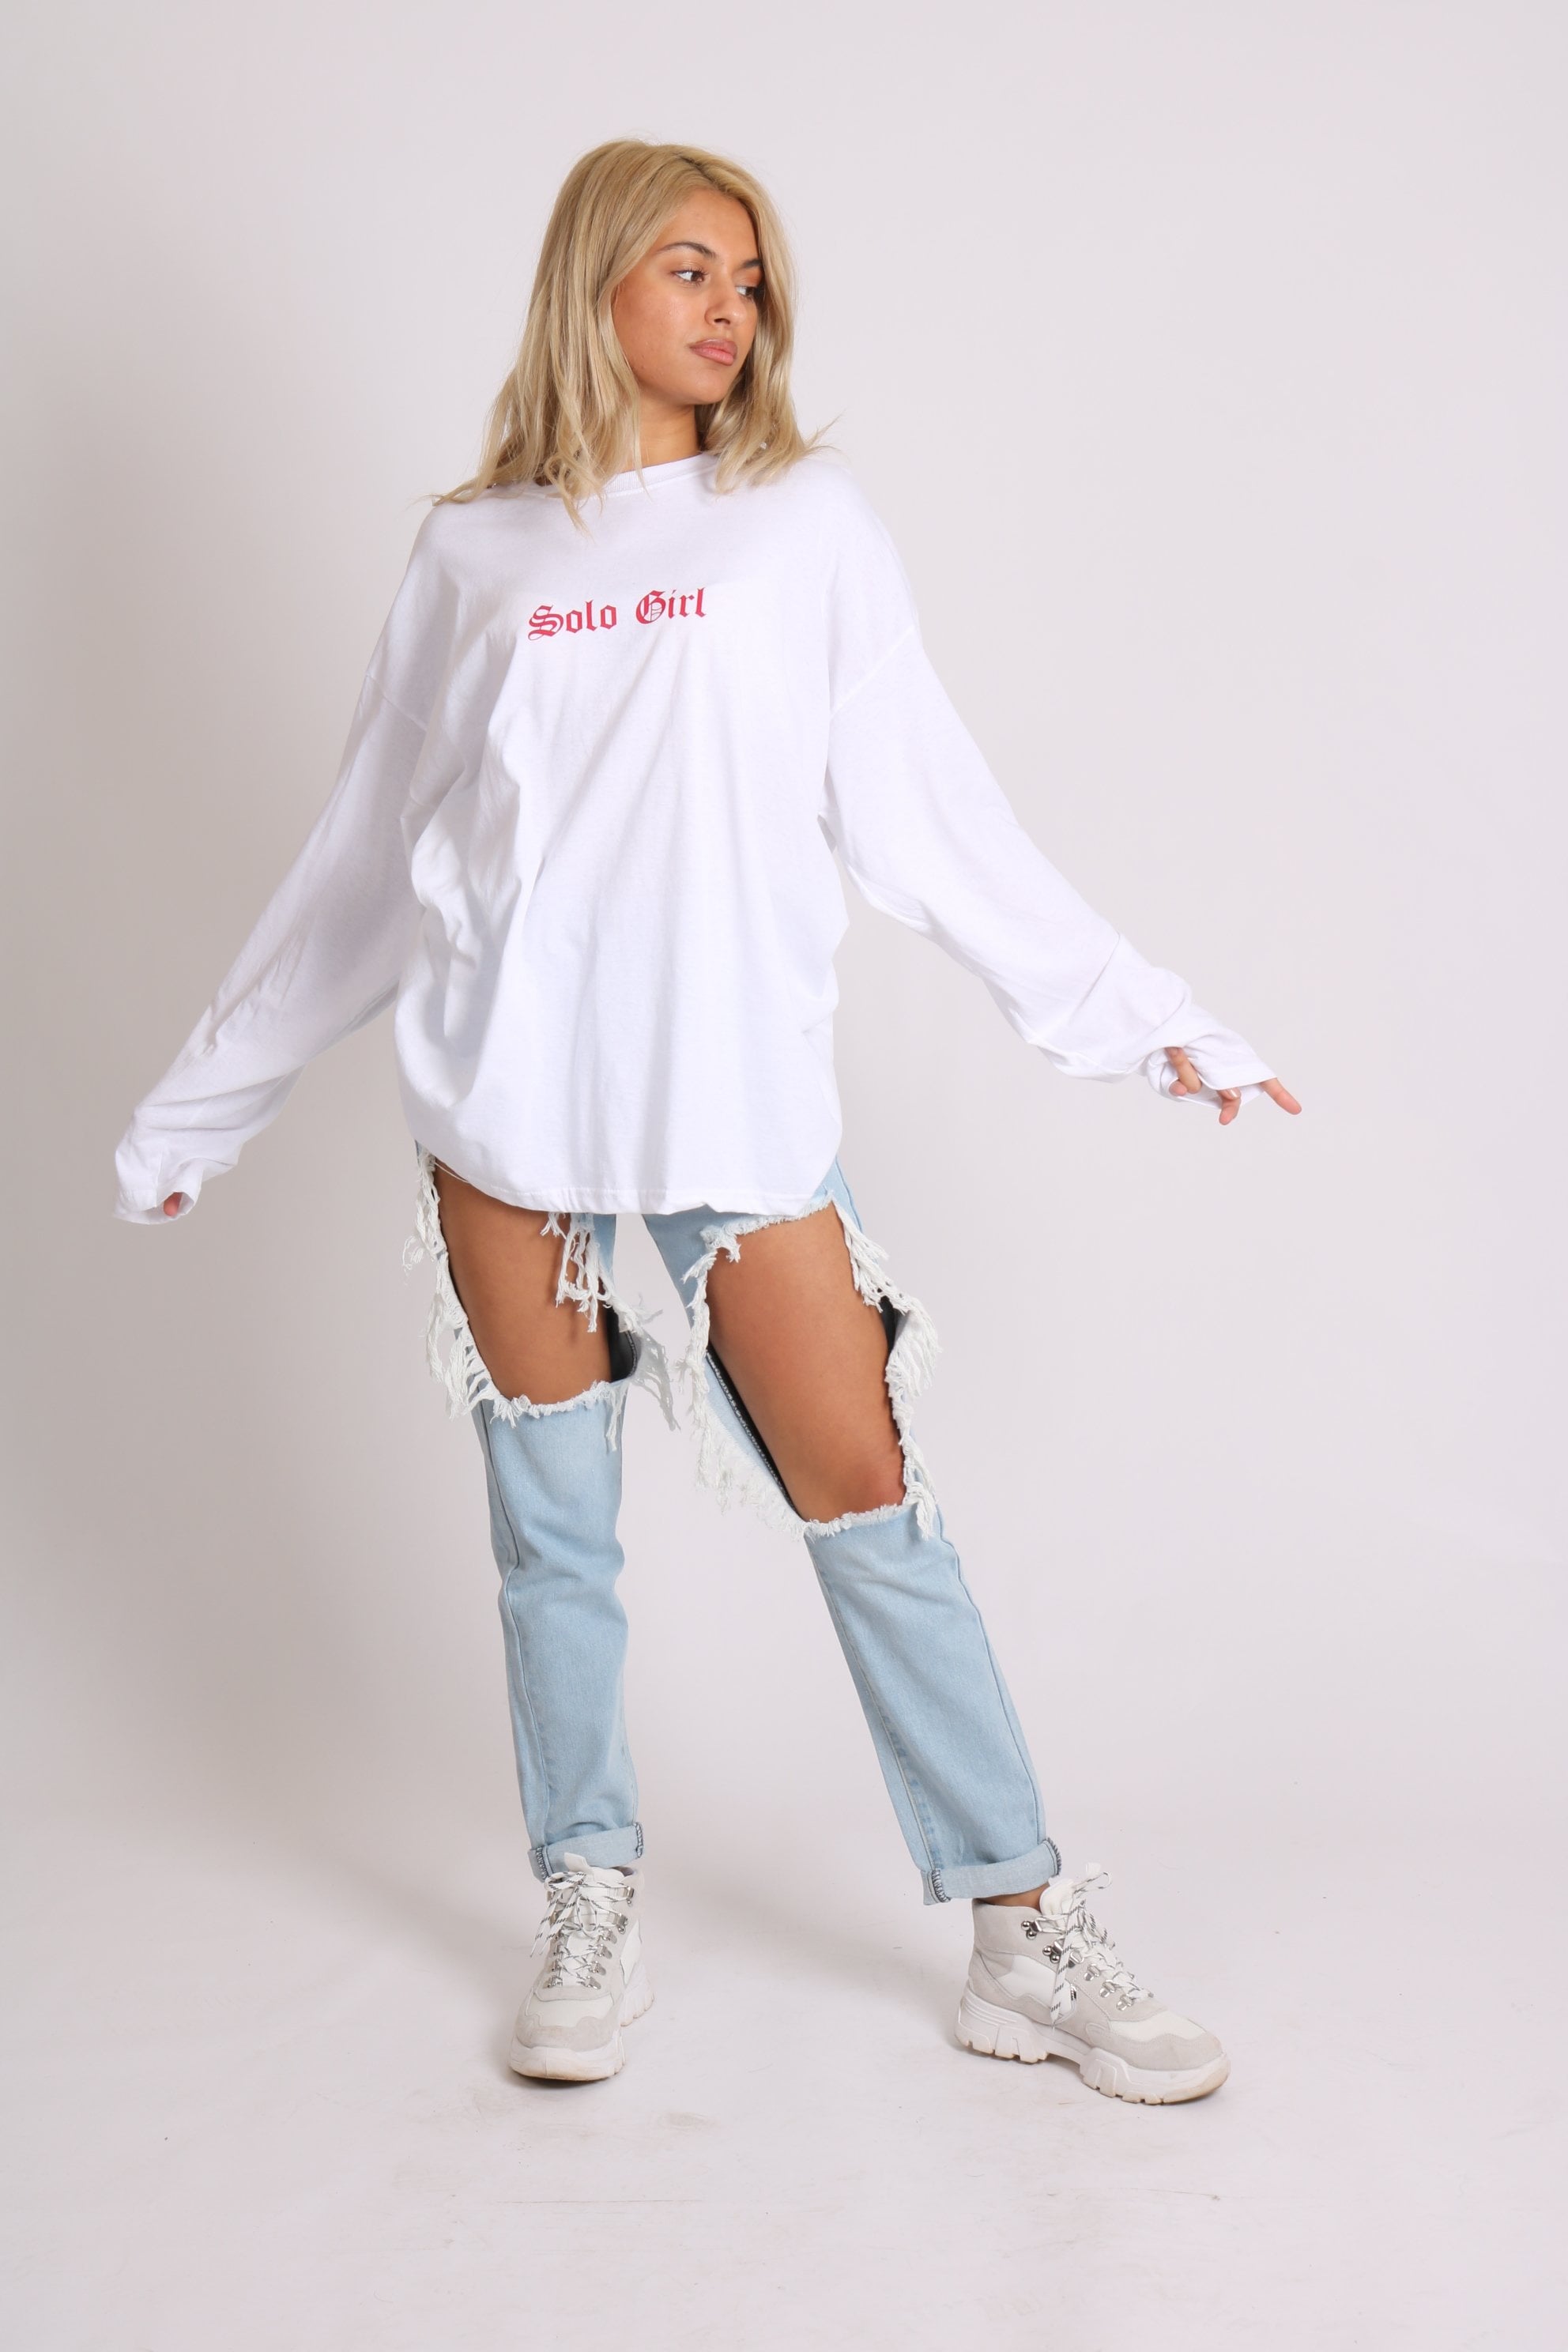 Solo girl long sleeve t-shirt with safari print in white - Liquor N Poker LIQUOR N POKER